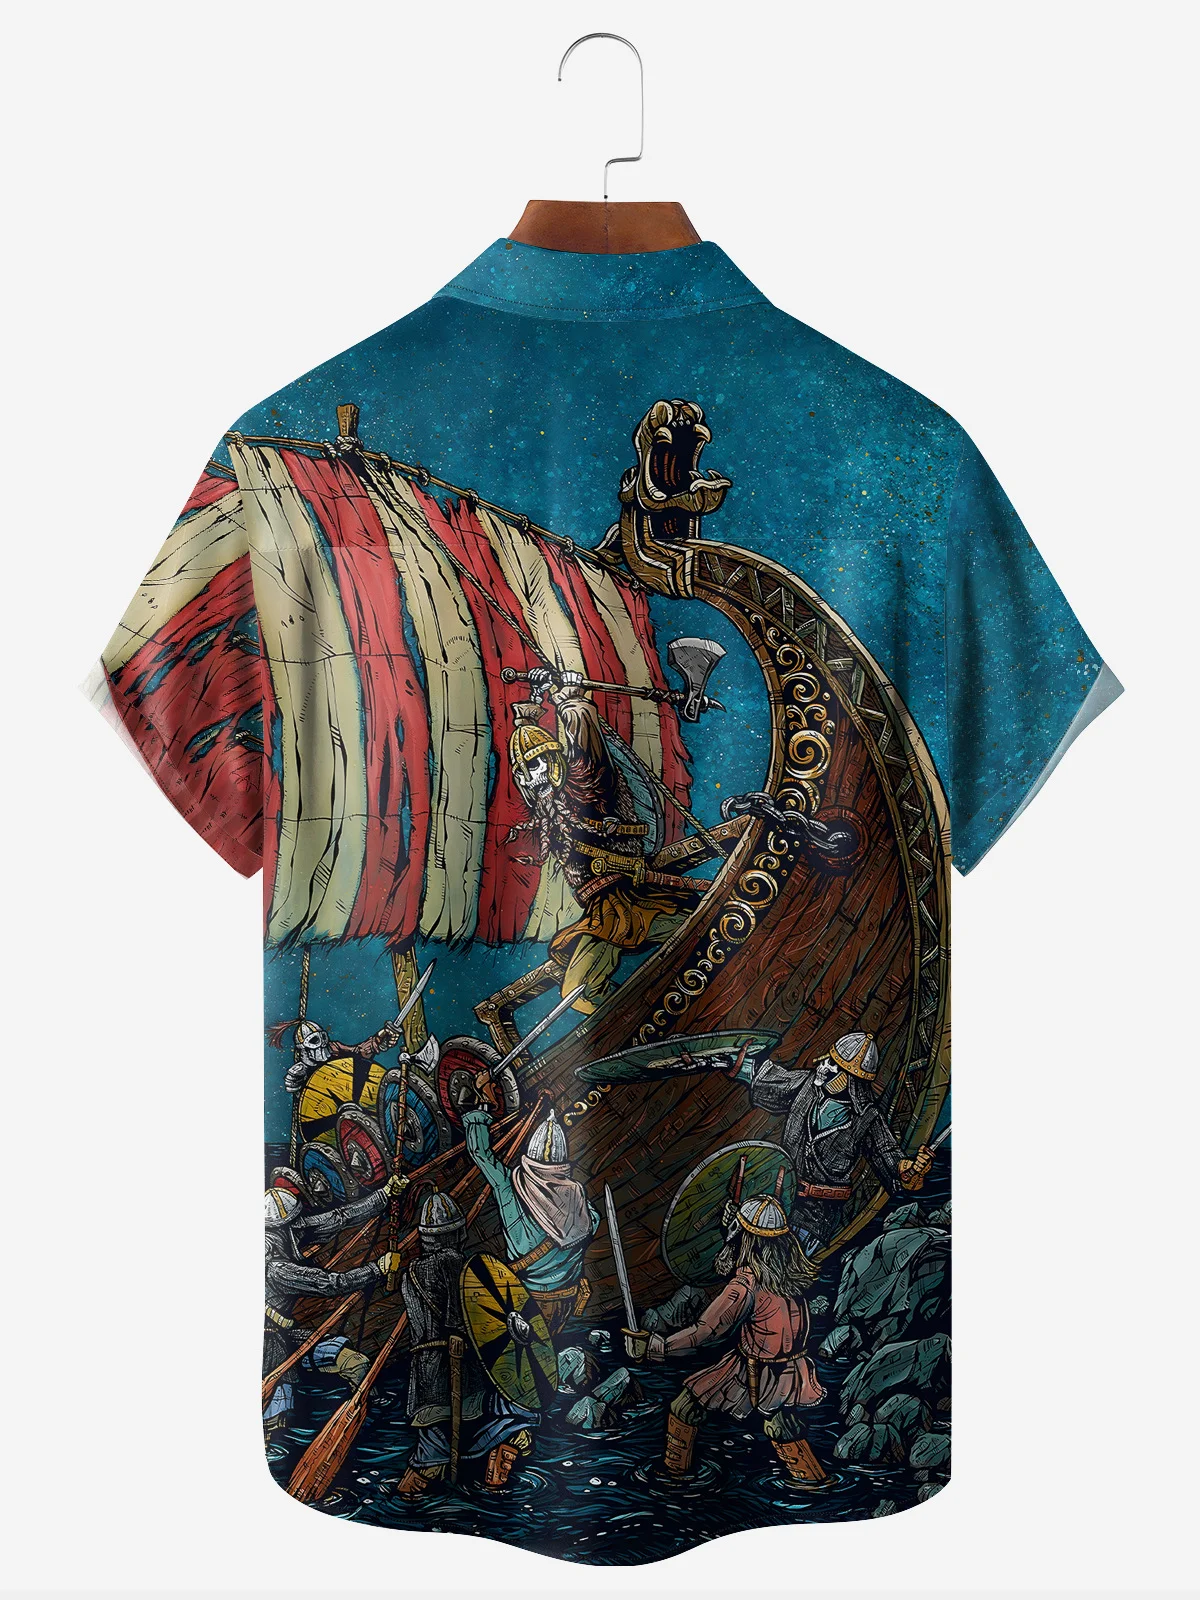 Viking Raid Shirt By David Lozeau